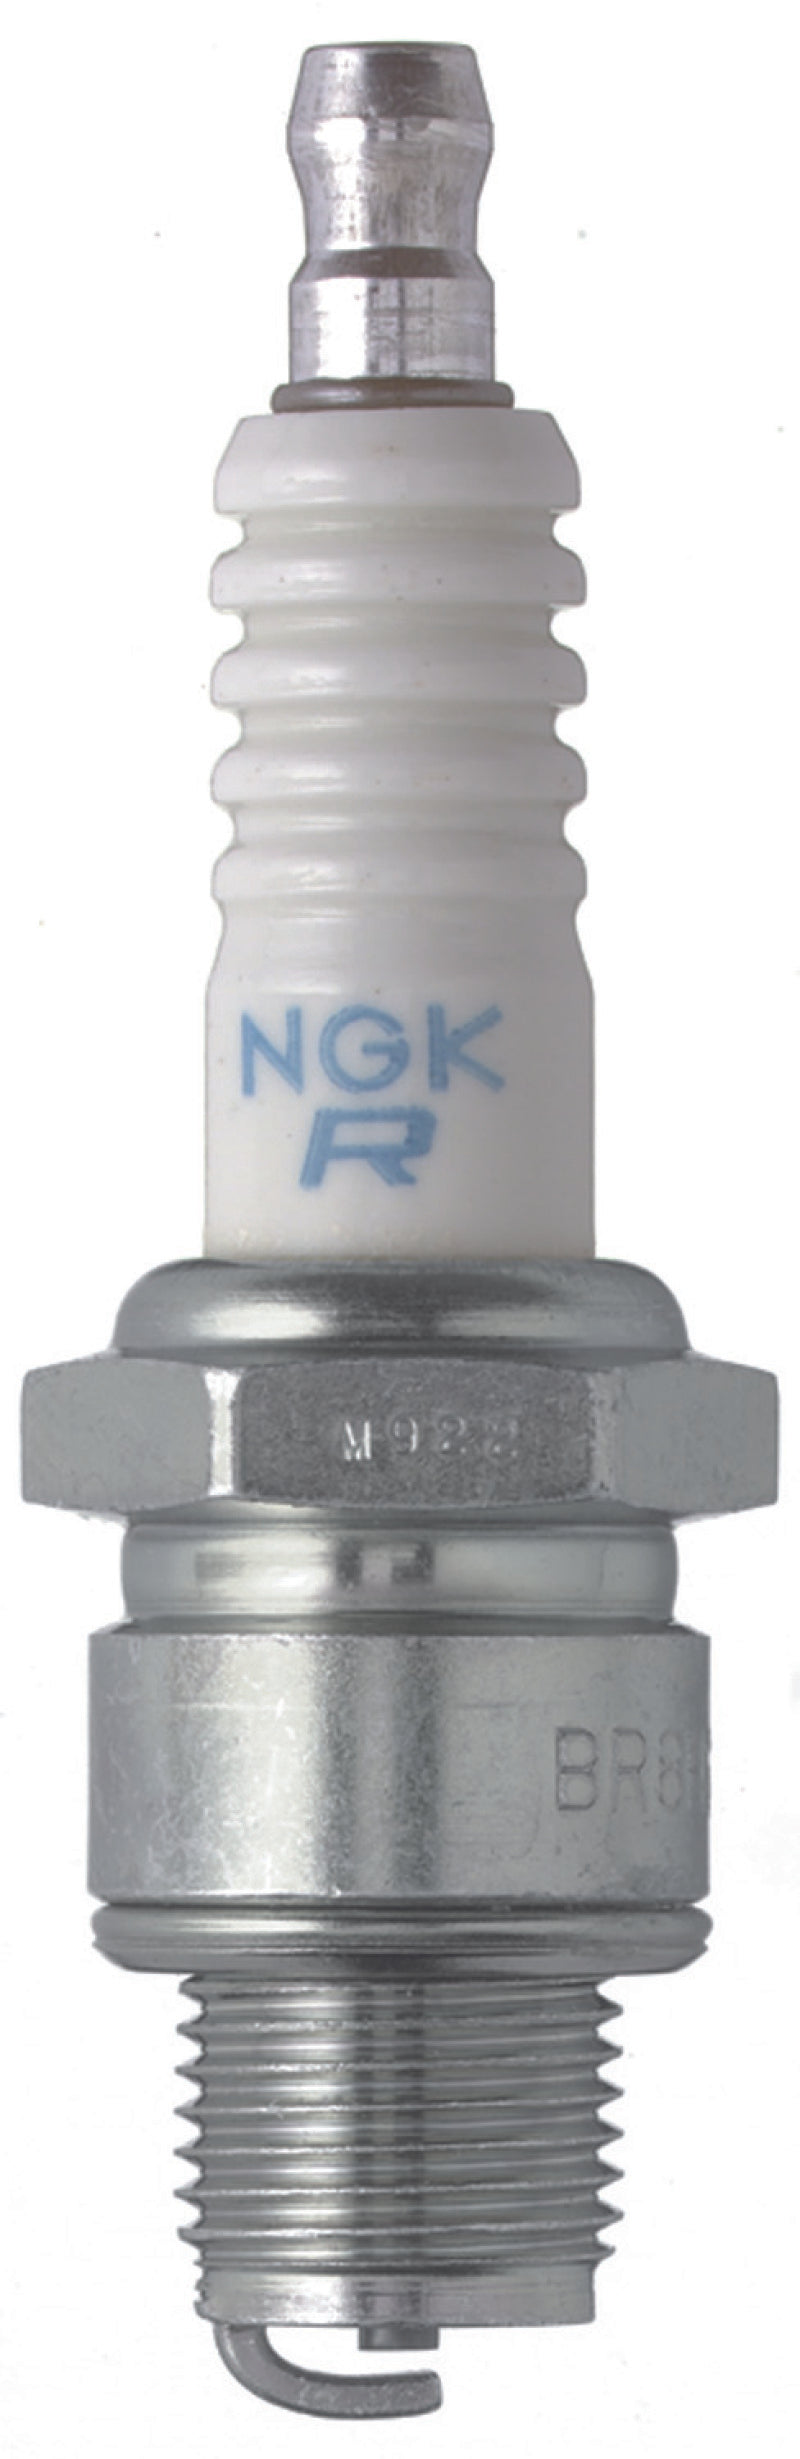 NGK Standard Spark Plug Box of 10 (BR7HS-10)